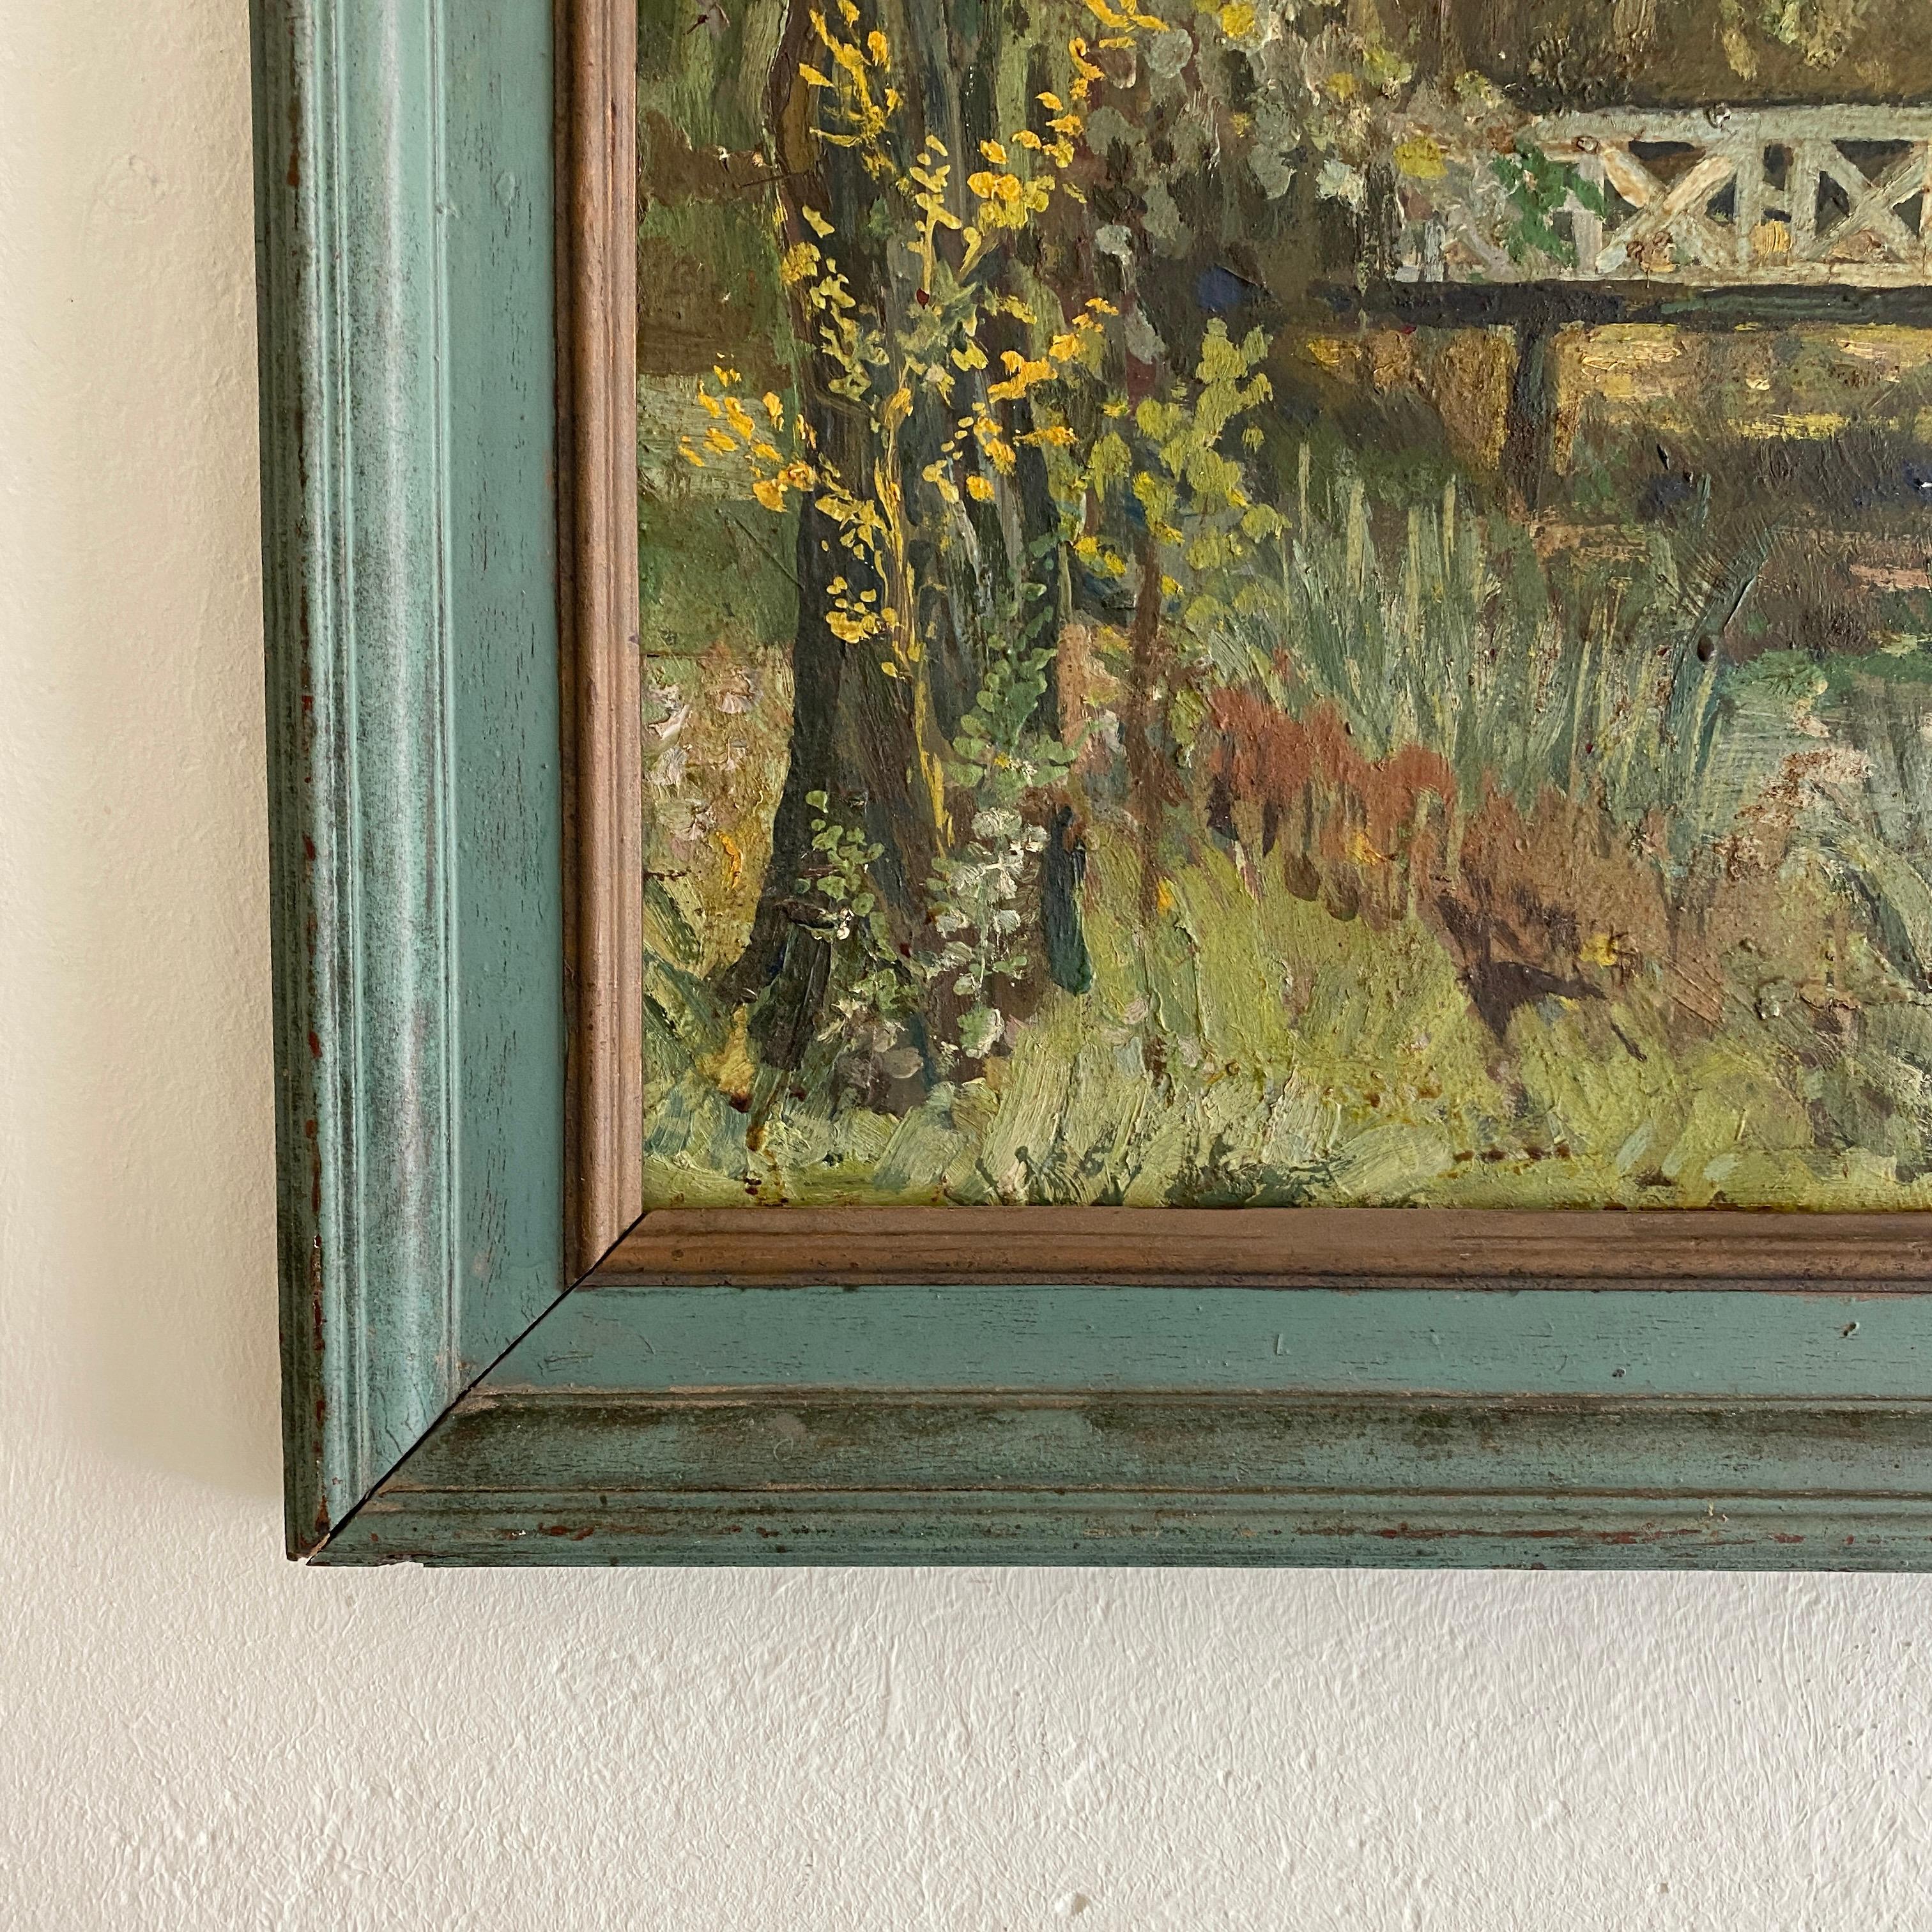 Anfang des 20. Jahrhunderts deutsche Art Deco Landschaft Ölgemälde um 1920 
des deutschen Künstlers Florenz Engelbert Hegemann. 
Das Gemälde ist in Öl auf Holz gemalt und hat den Originalrahmen.
Dieses Gemälde zeigt wahrscheinlich den Park von